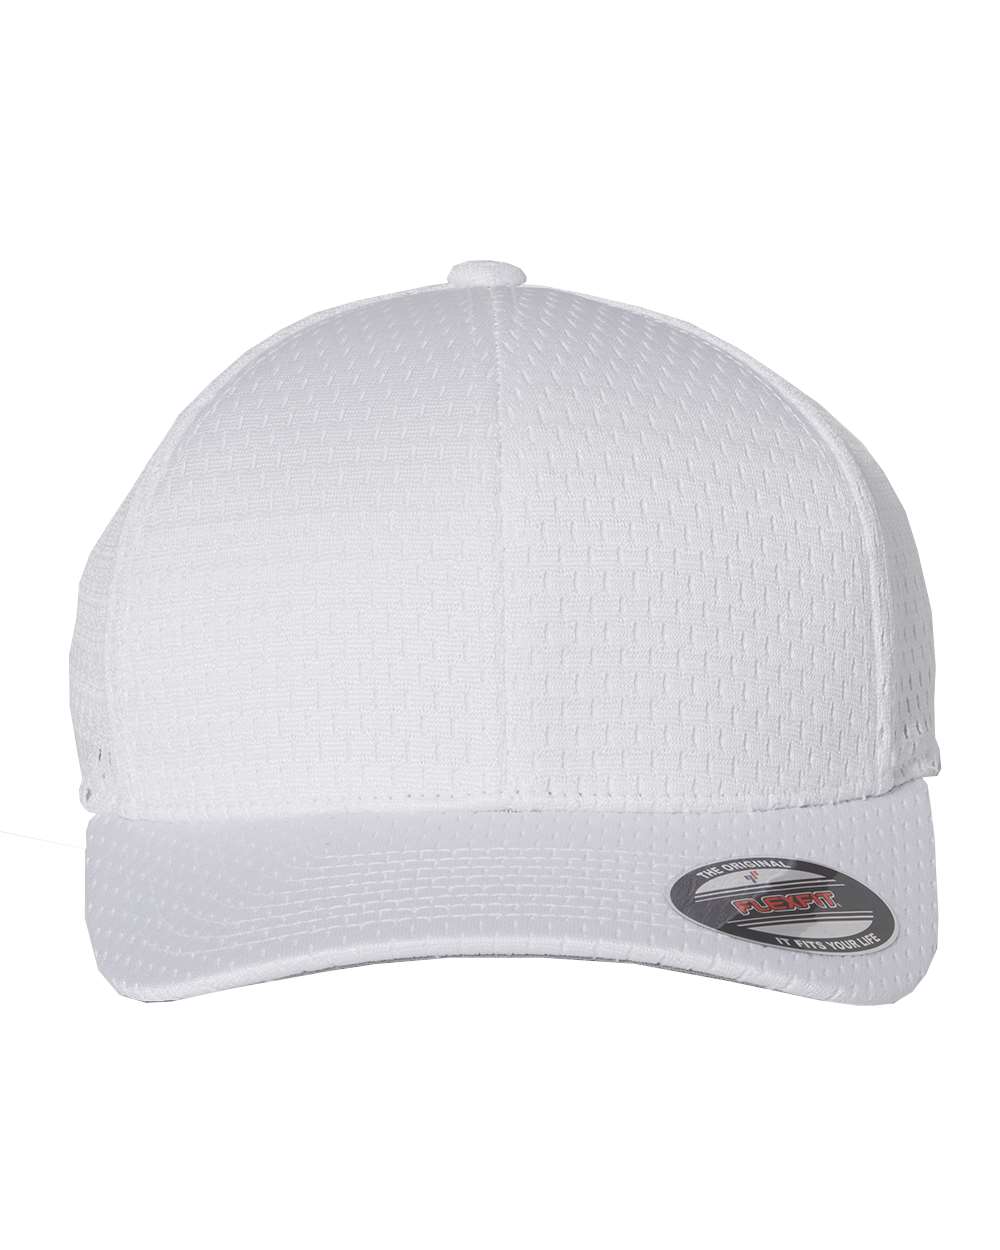 Custom Flexfit Athletic Mesh Cap - Design Online